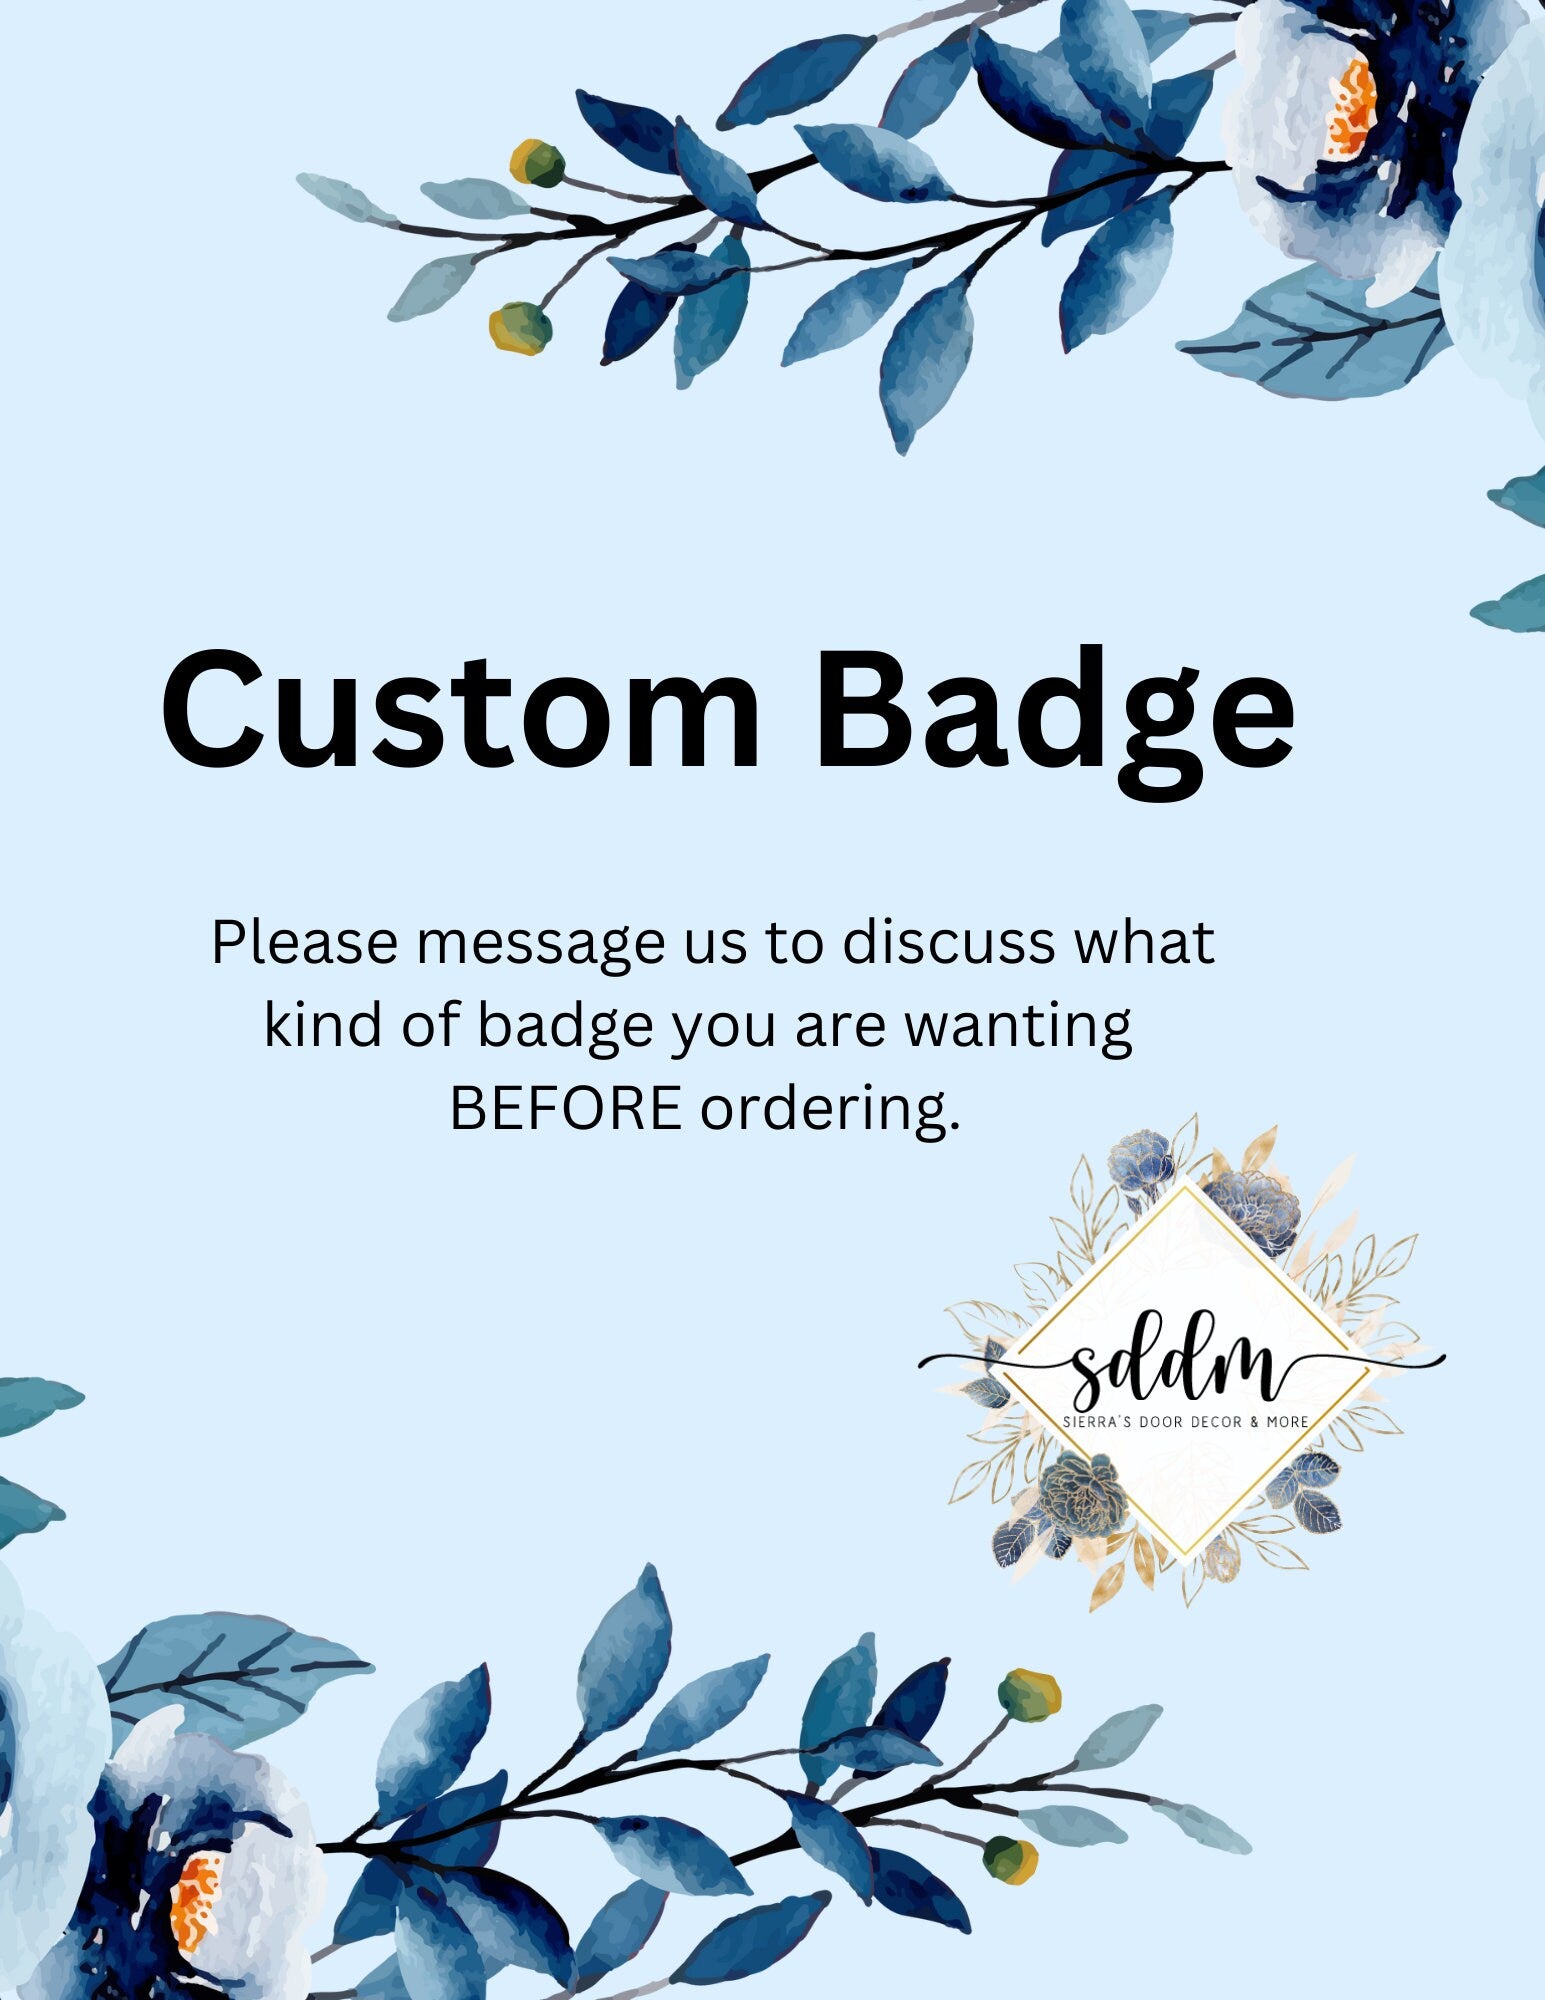 Custom badge reel – Sierra's Door Decor & More